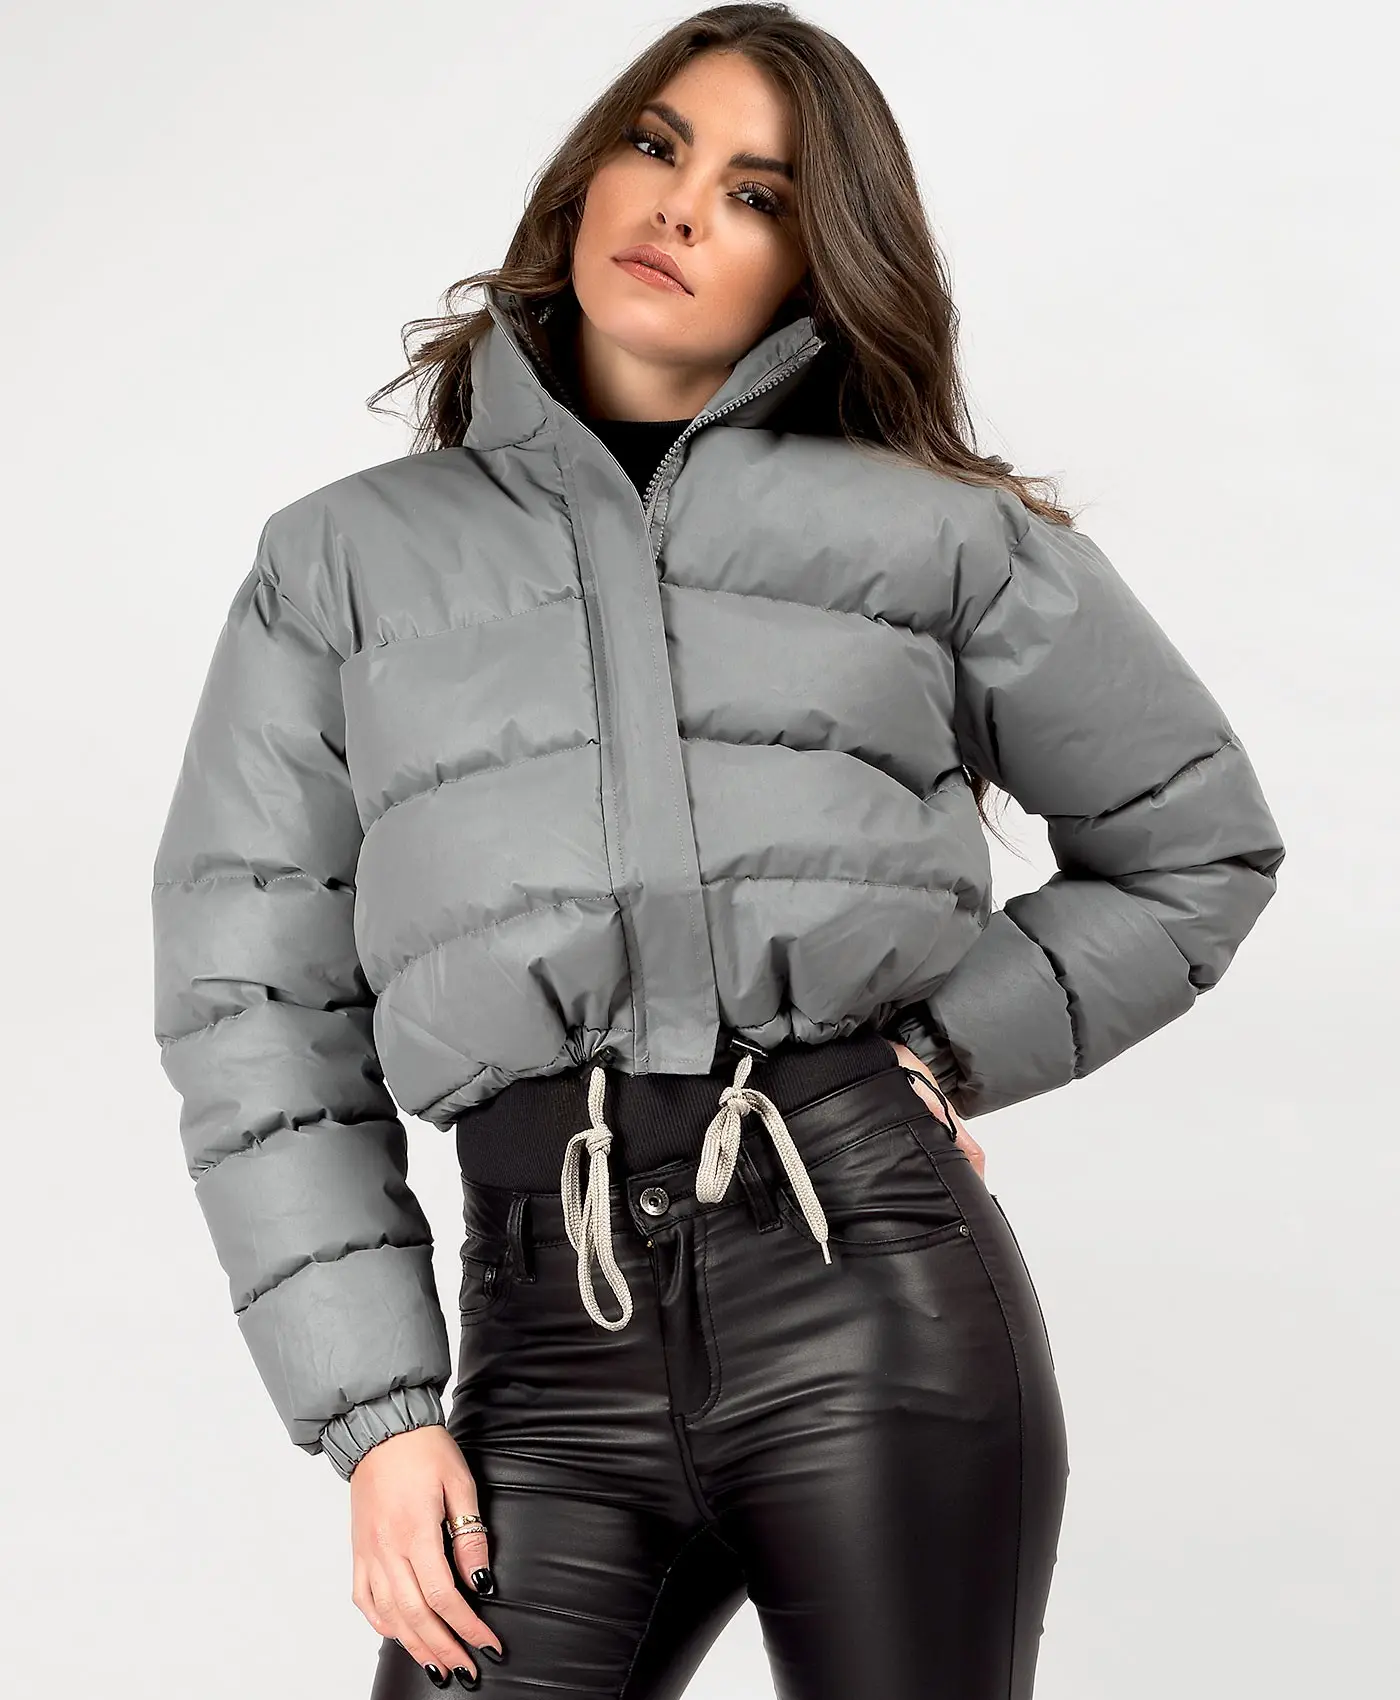 Yeni tasarım Zip Up Teddy rüzgarlık ceket pamuk yastıklı ceketler standı yaka kırpılmış balon ceket kadınlar için